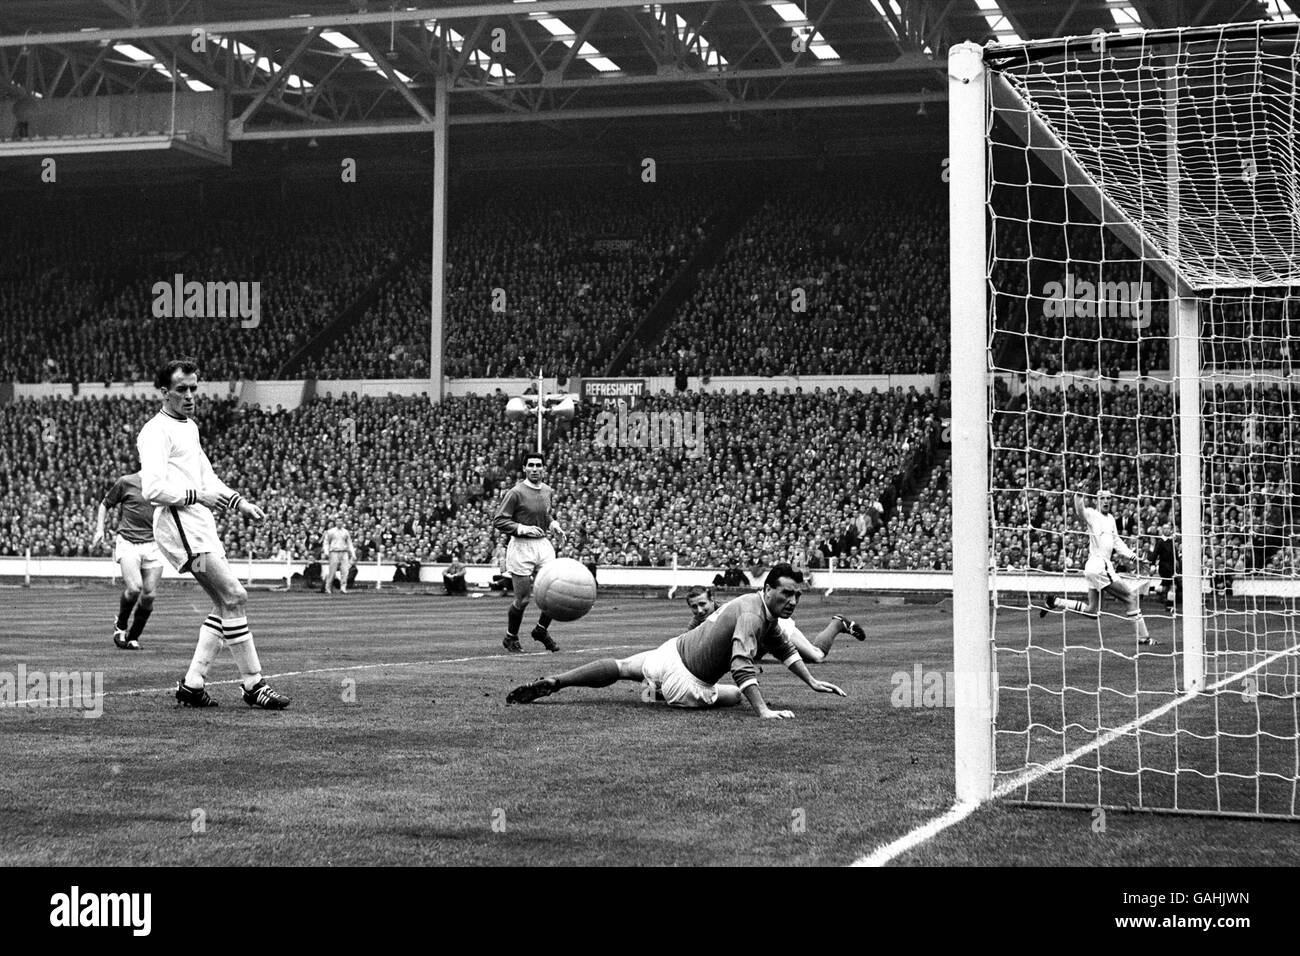 Calcio - fa Cup - finale - Manchester United / Leicester City. Il Manchester United's Noel Cantwell (c, sul pavimento) guarda la palla volare stretto largo del suo obiettivo dopo aver ottenuto un leggero tocco su una croce Foto Stock